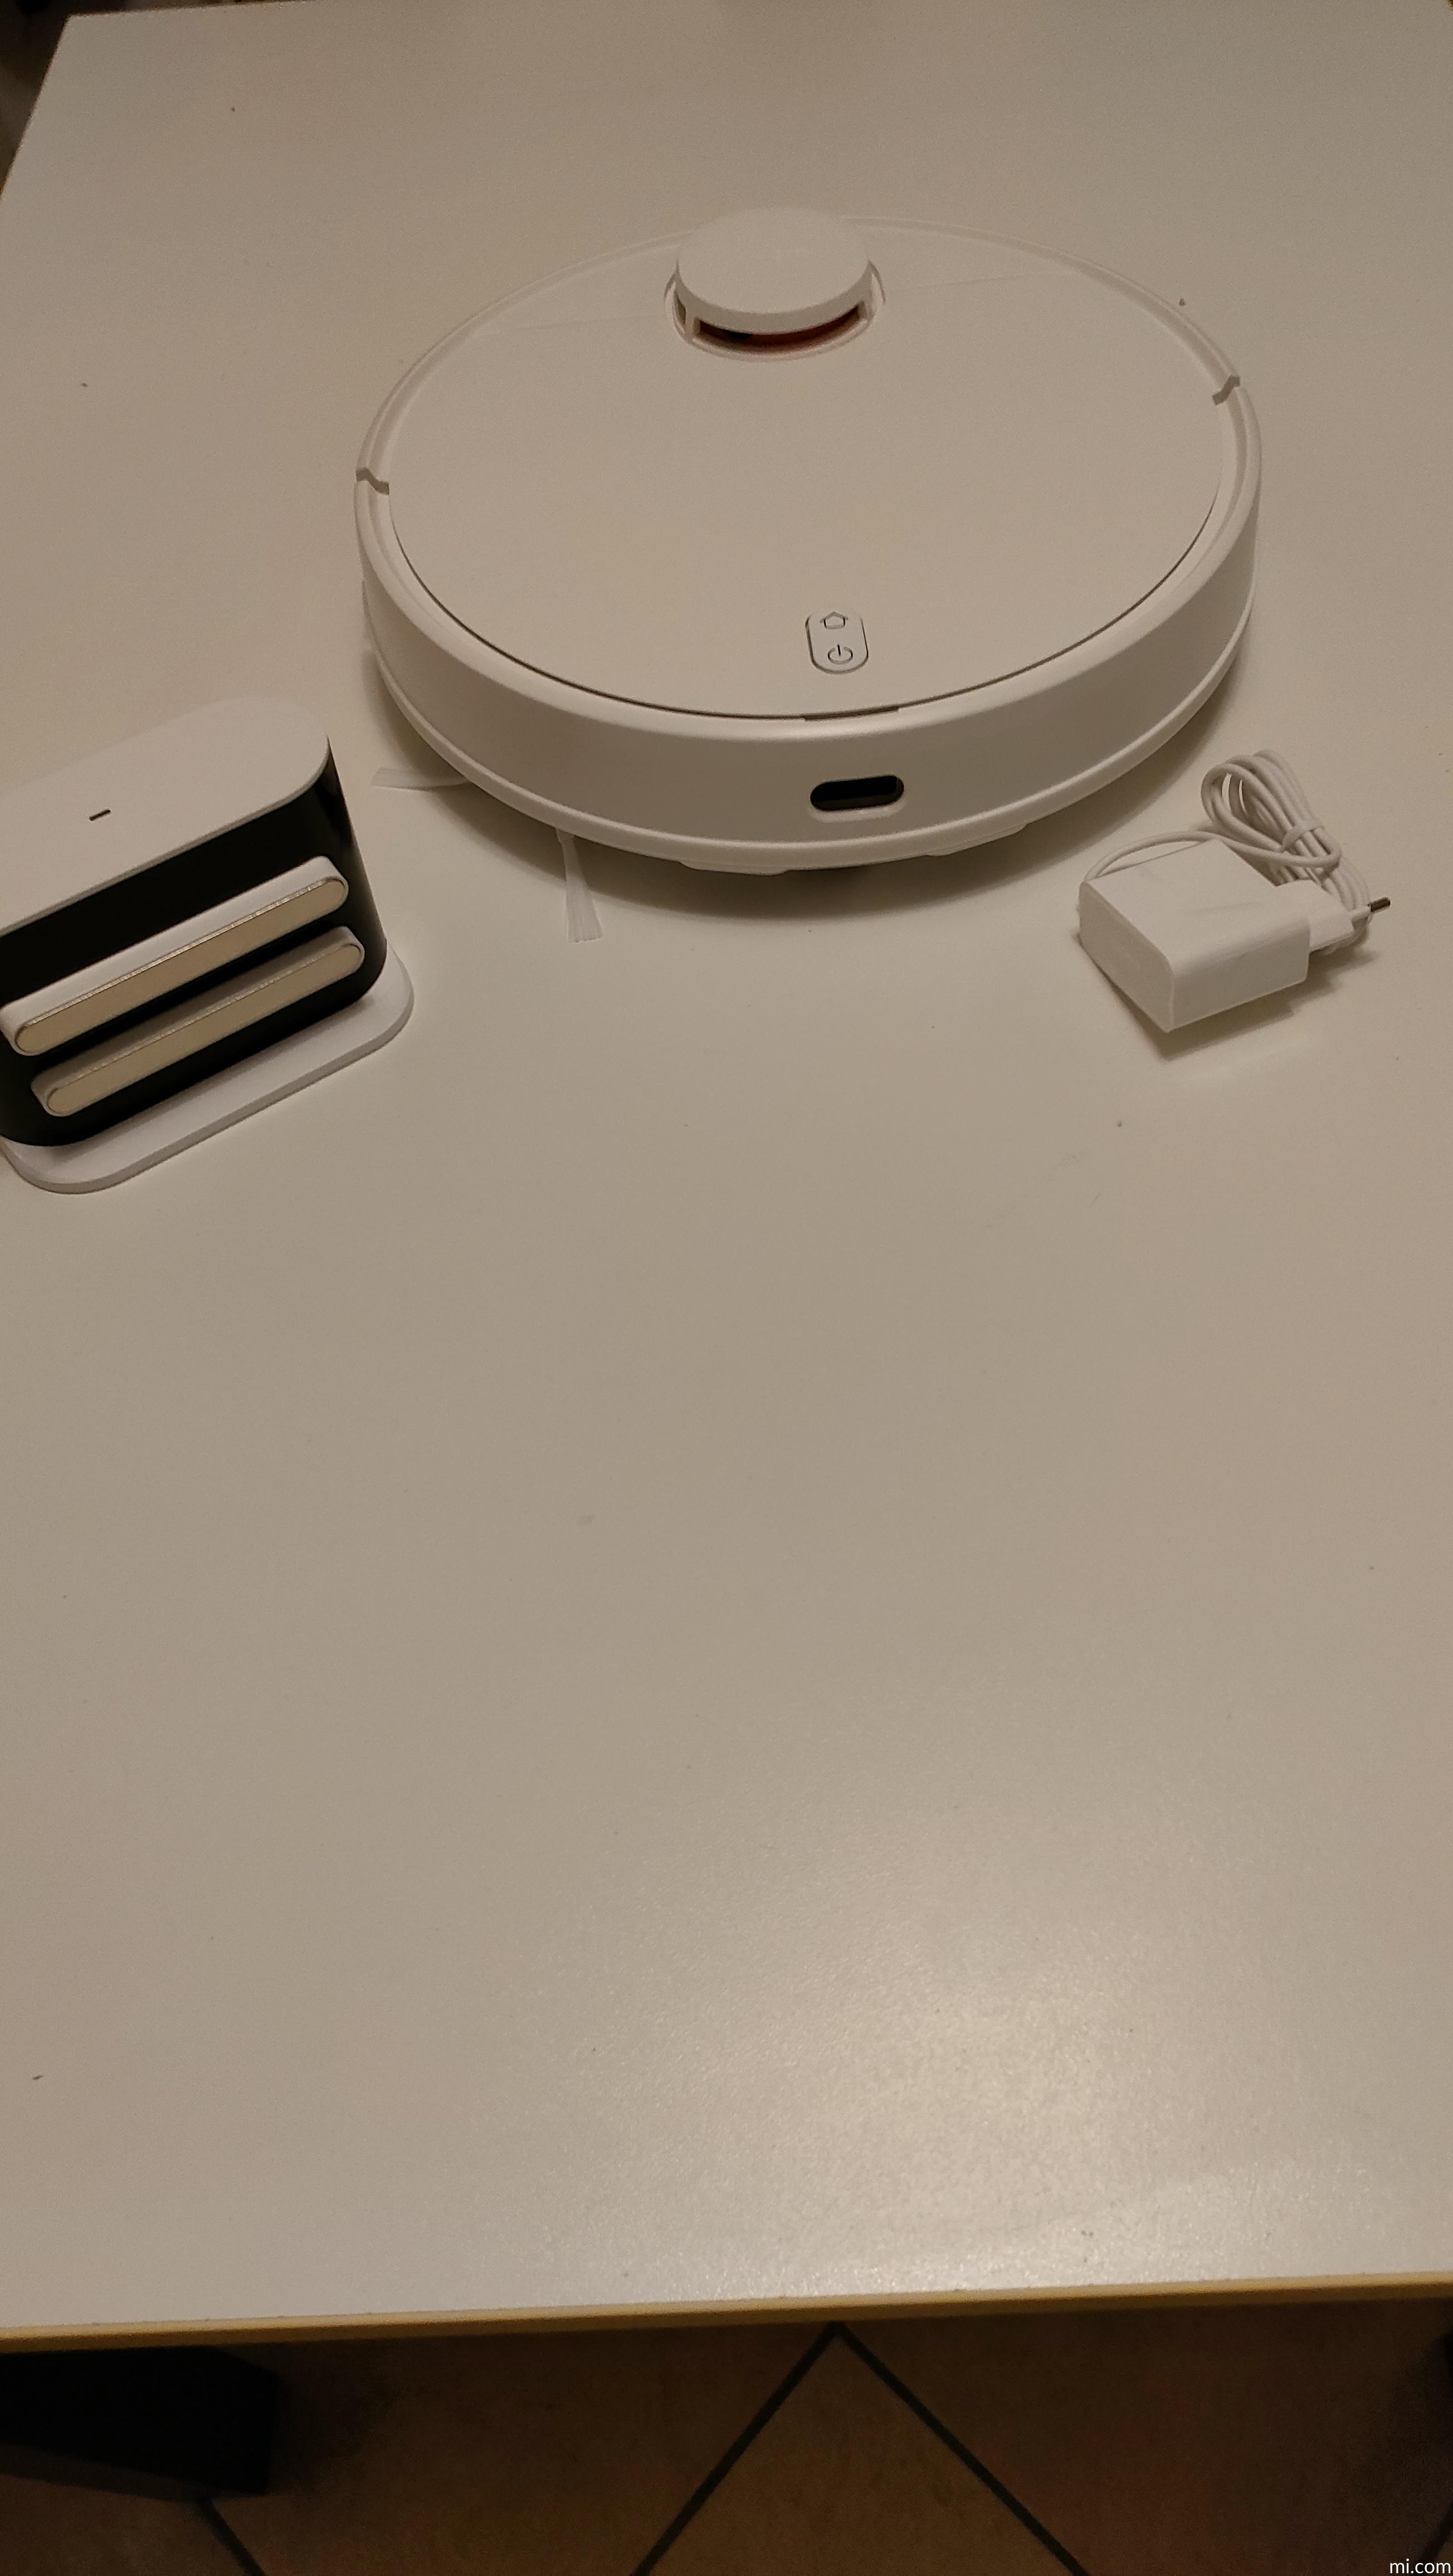 Xiaomi Robot Vacuum S12 - Xiaomi Italia